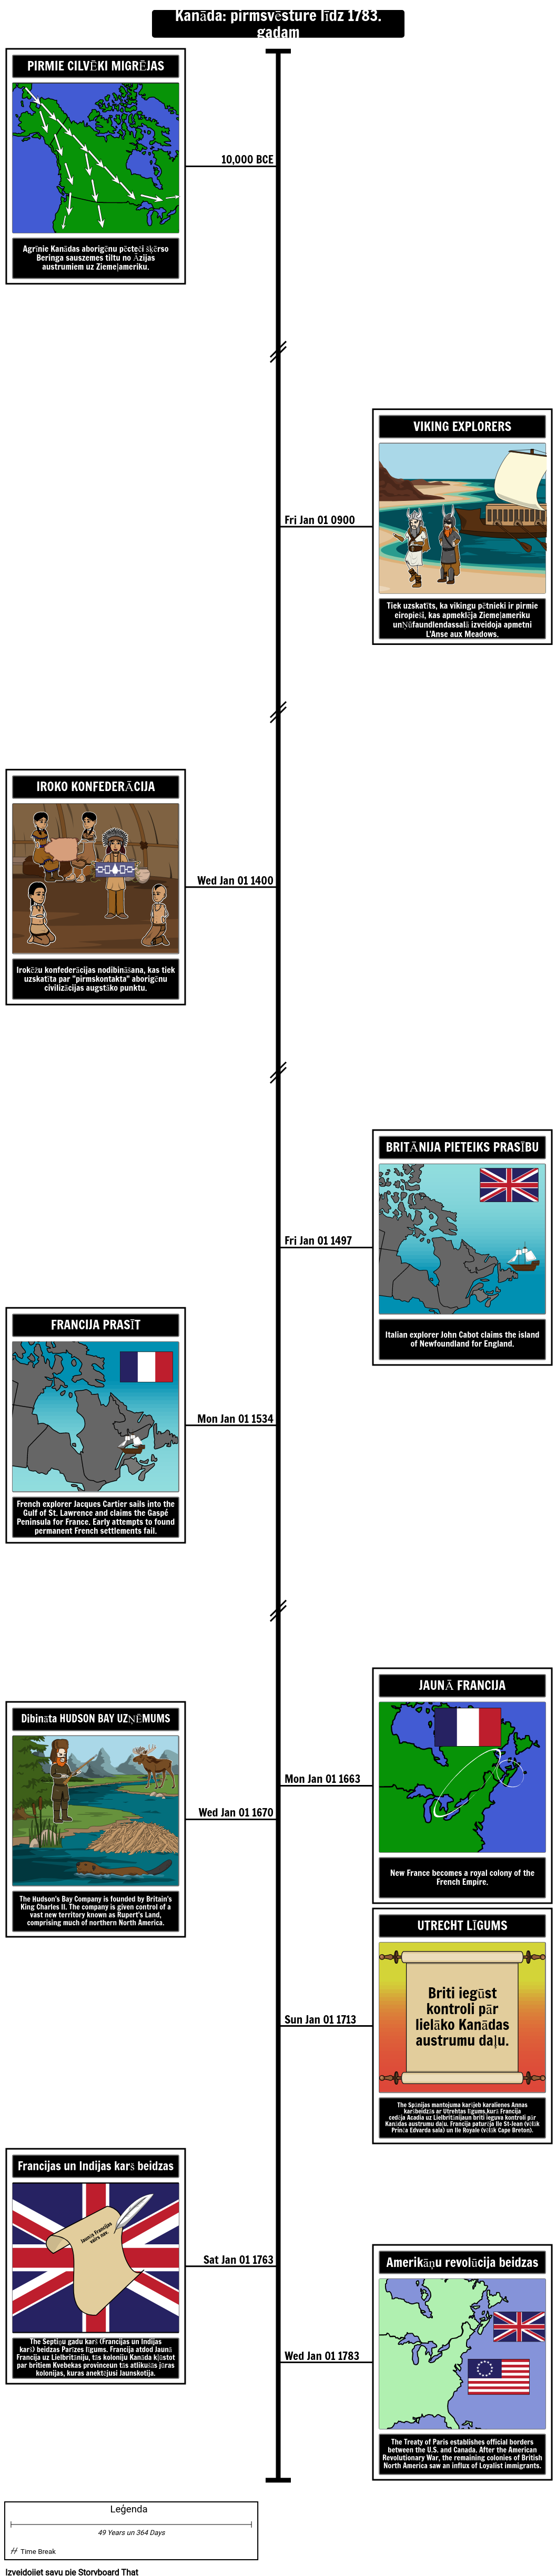 Kanādas vēstures laika skala Pirms vēstures līdz 1783. gadam